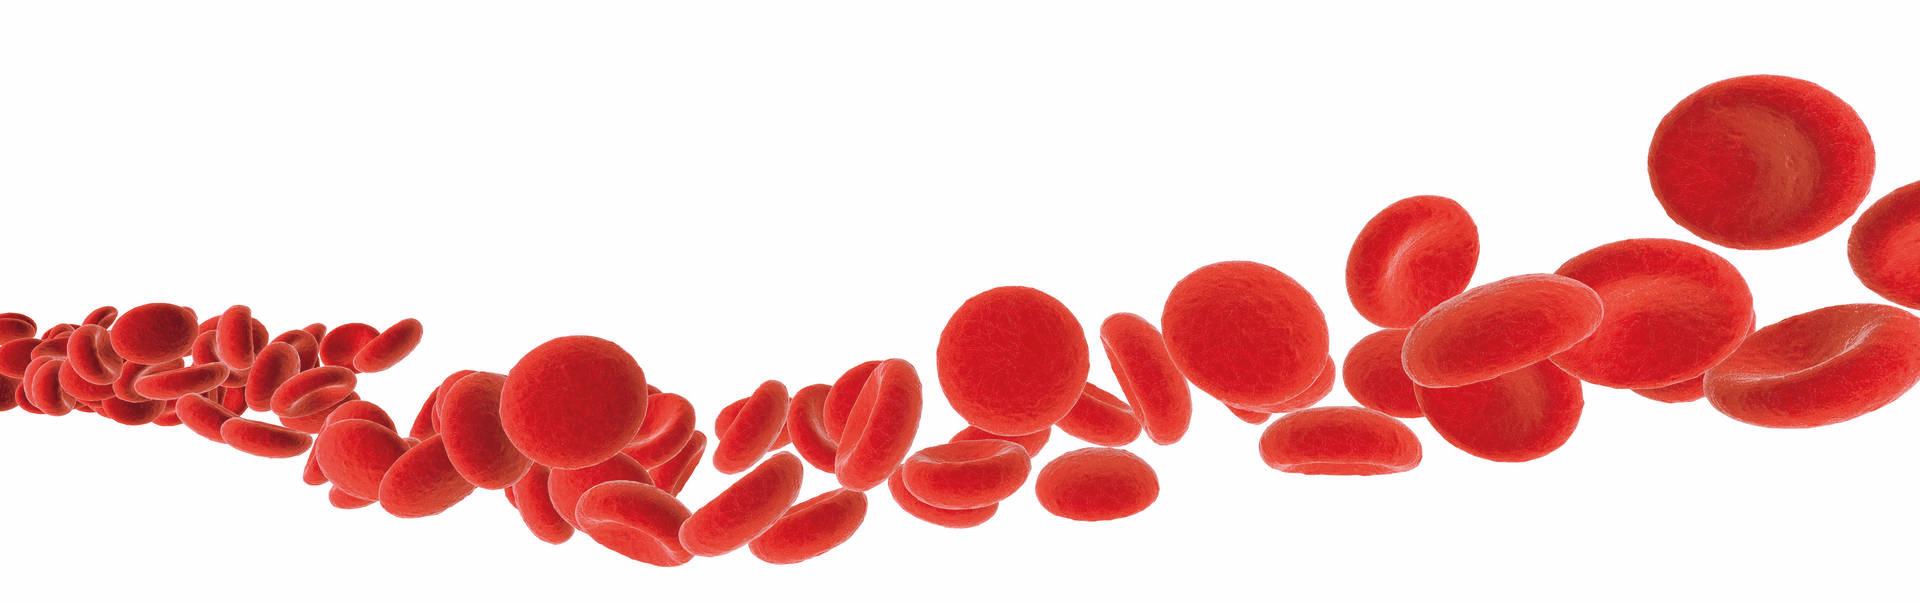 rote Blutkörperchen isoliert auf weißer 3D-Illustration